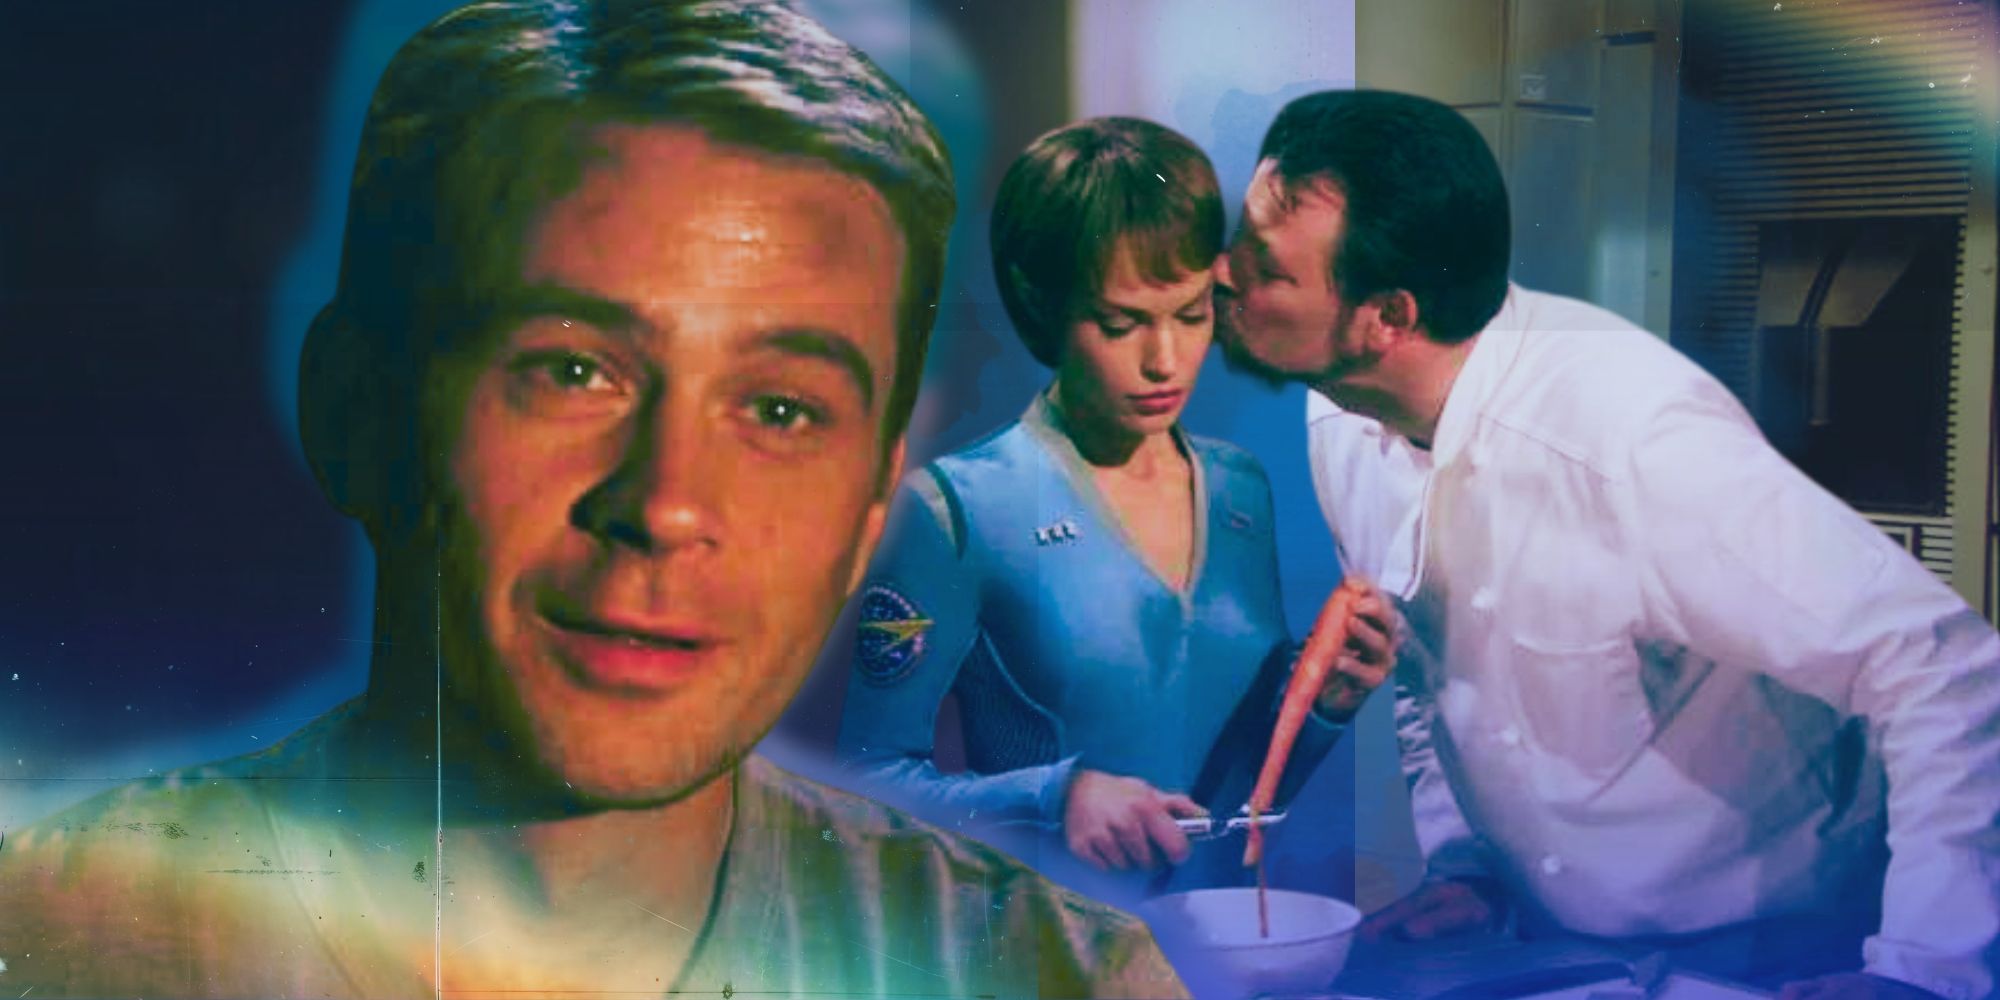 El chef misterioso de Enterprise debería haber sido uno de los tres personajes de Star Trek